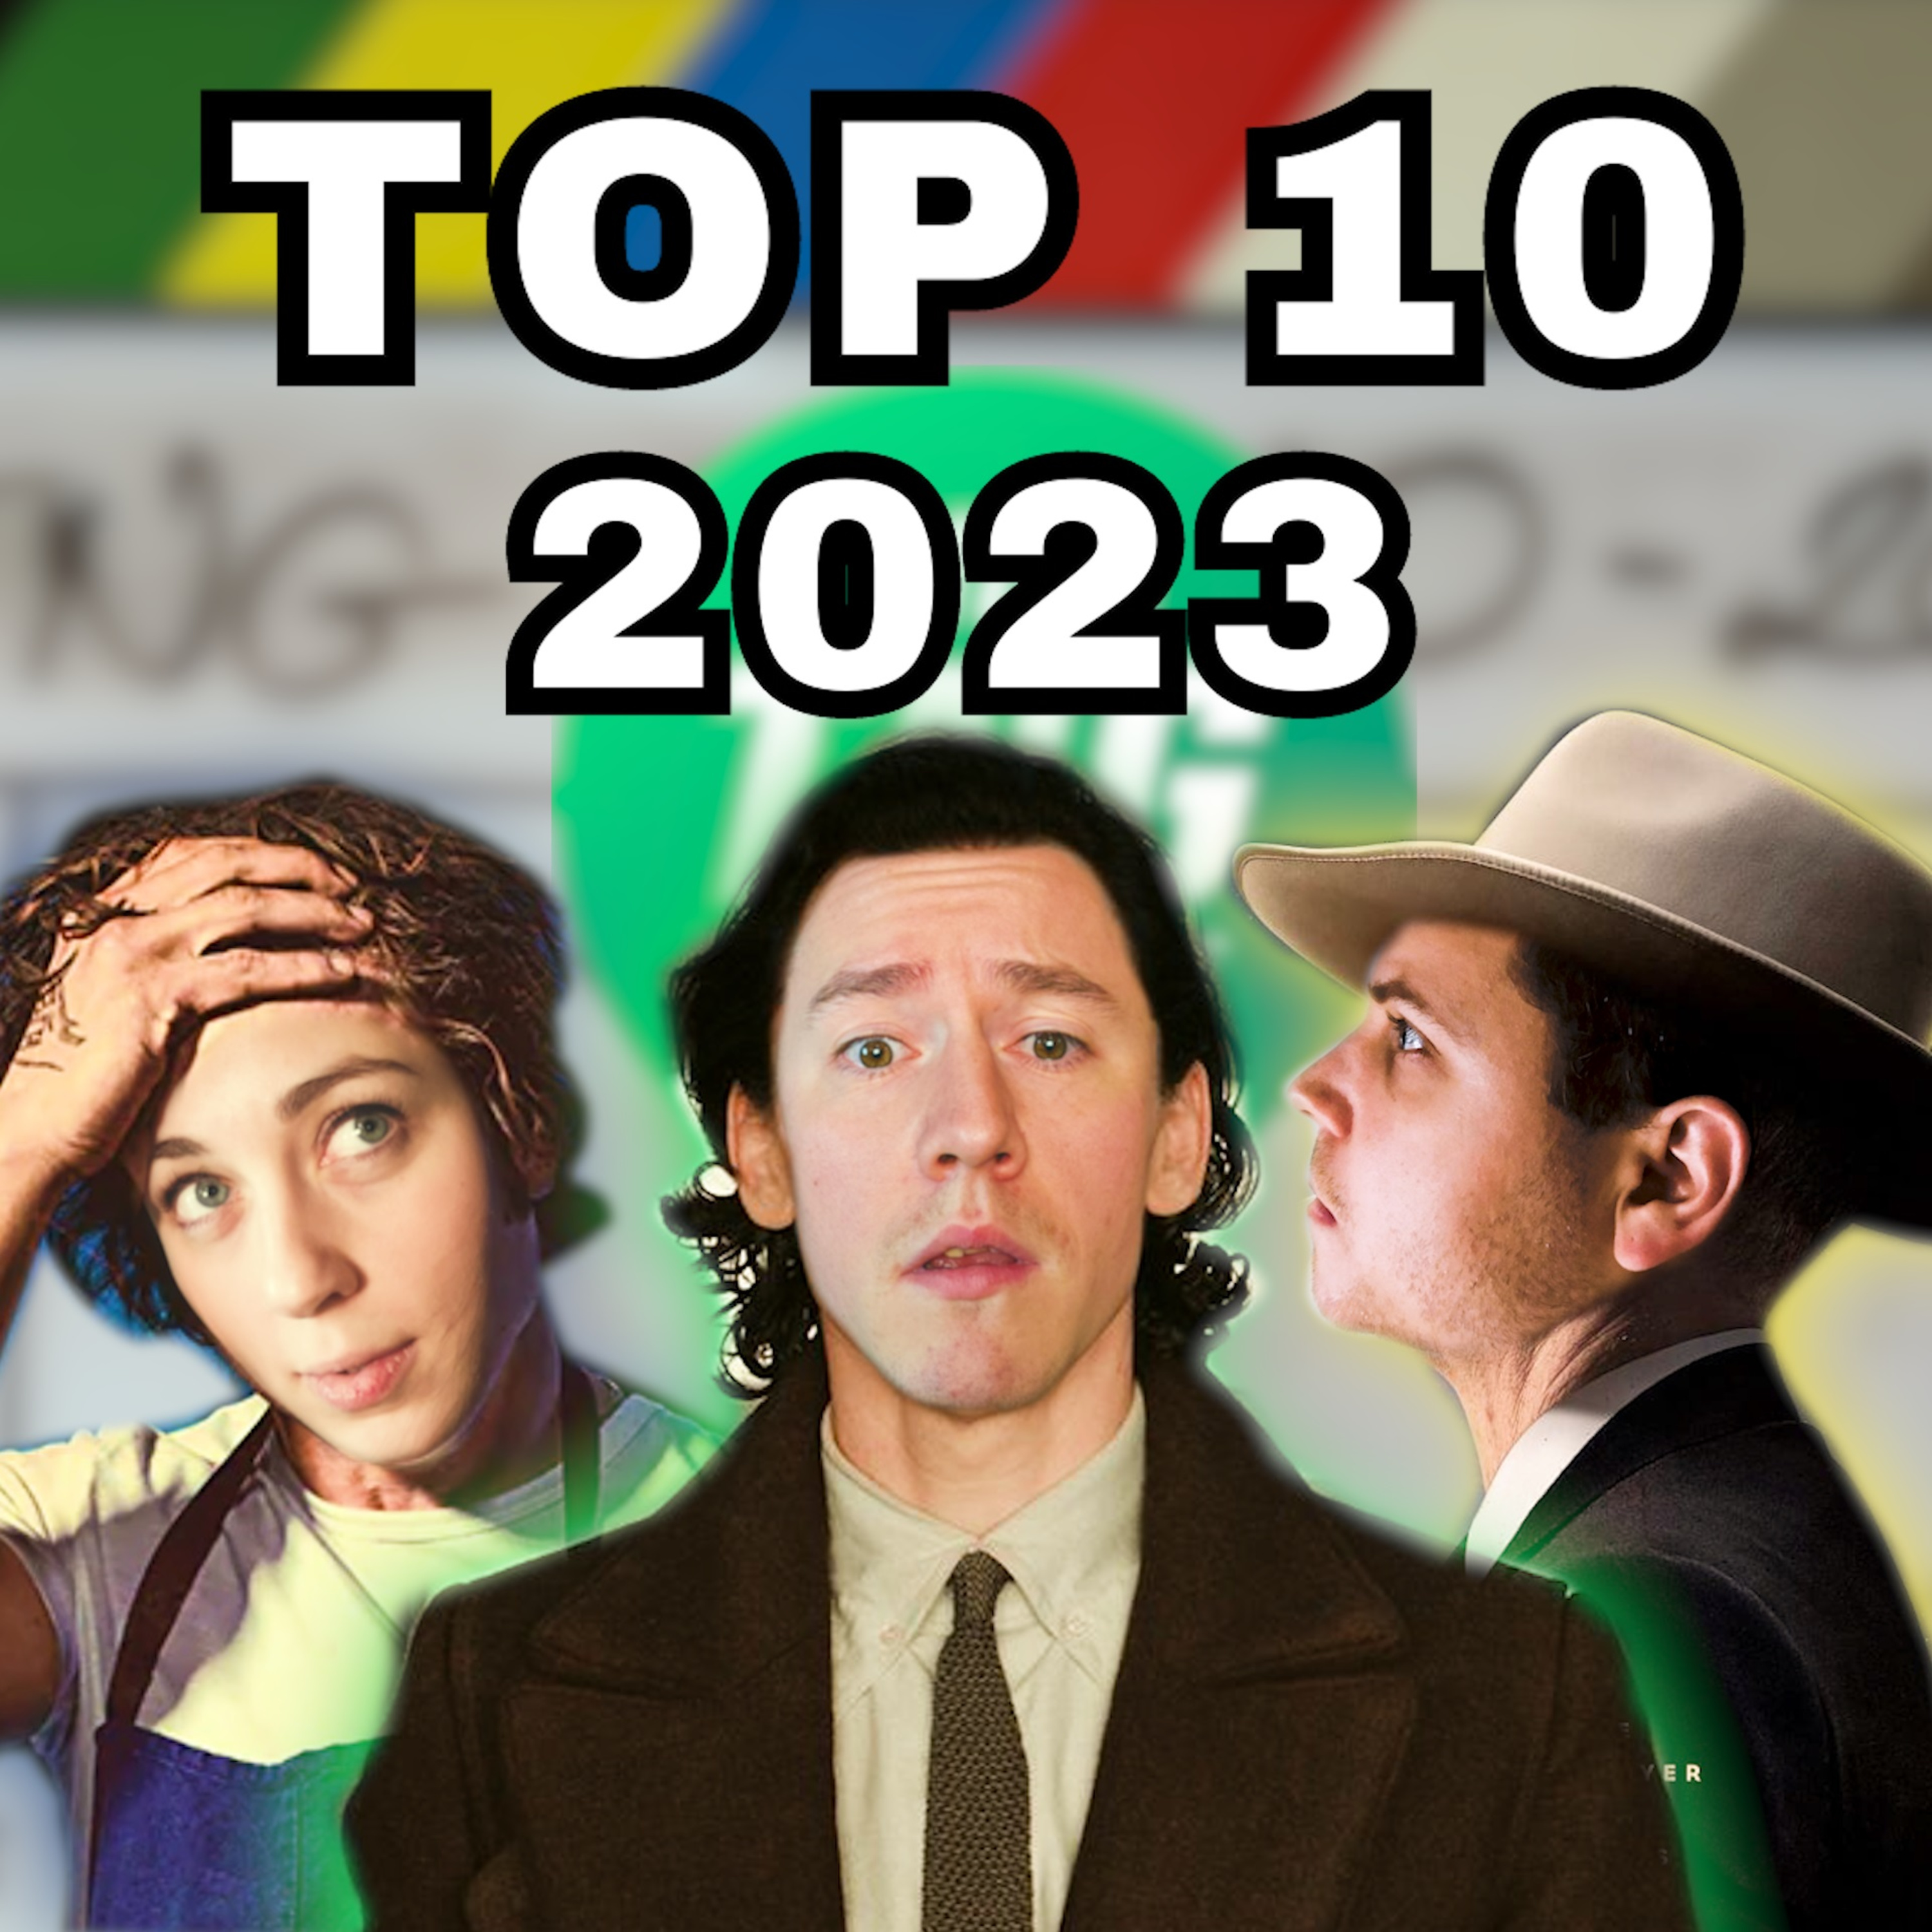 3x12 - Top 10 - filmek és sorozatok 2023